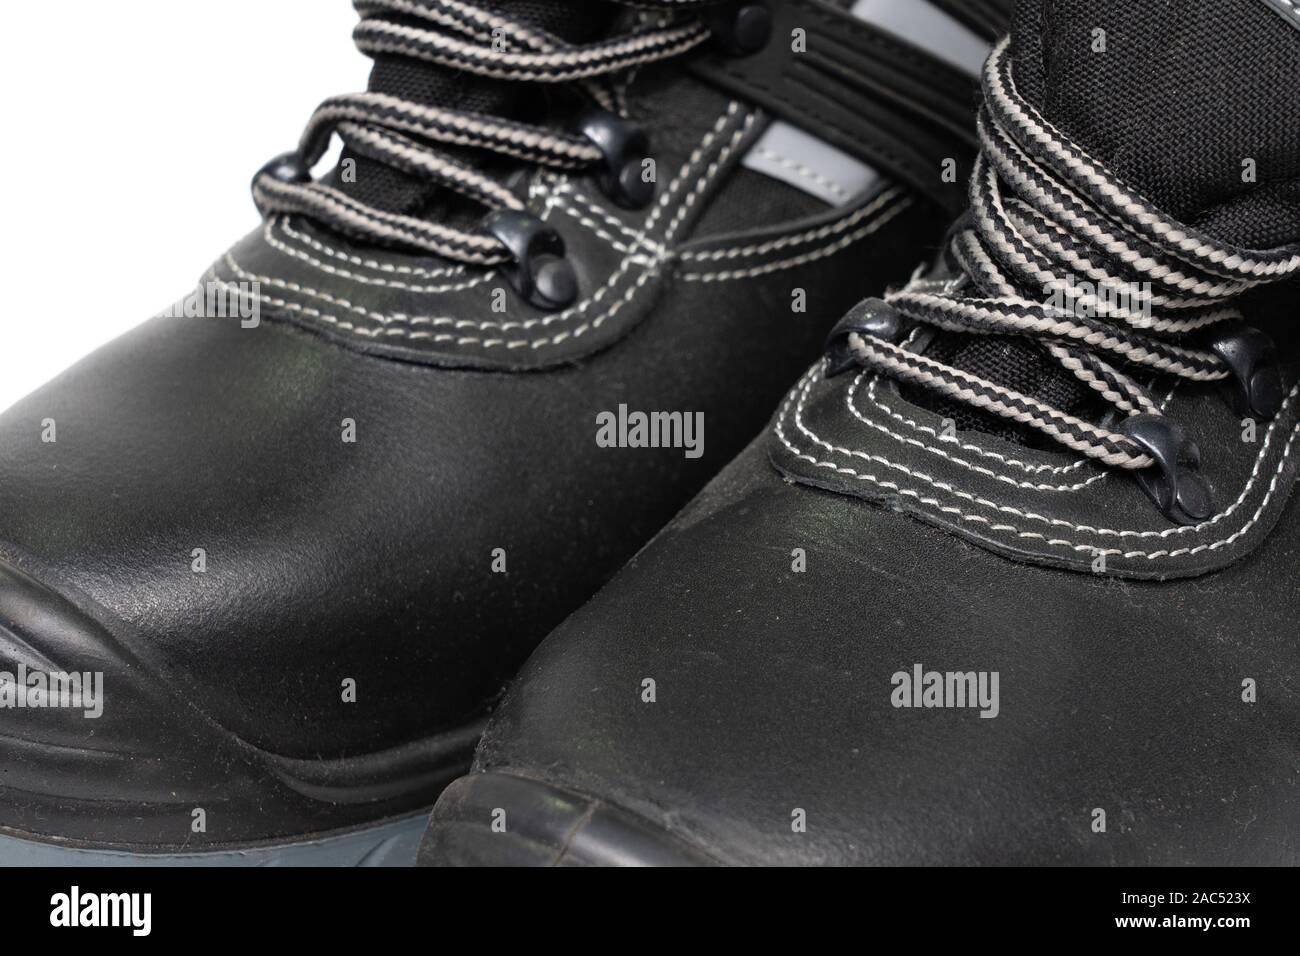 Neue Schuhe für die Arbeit mit Schnürsenkeln. Sicherheitsschuhe auf einem  weißen Hintergrund, der Arbeit Schuhe für Männer in der Fabrik oder der  Industrie Fuß vom Unfall zu schützen Stockfotografie - Alamy